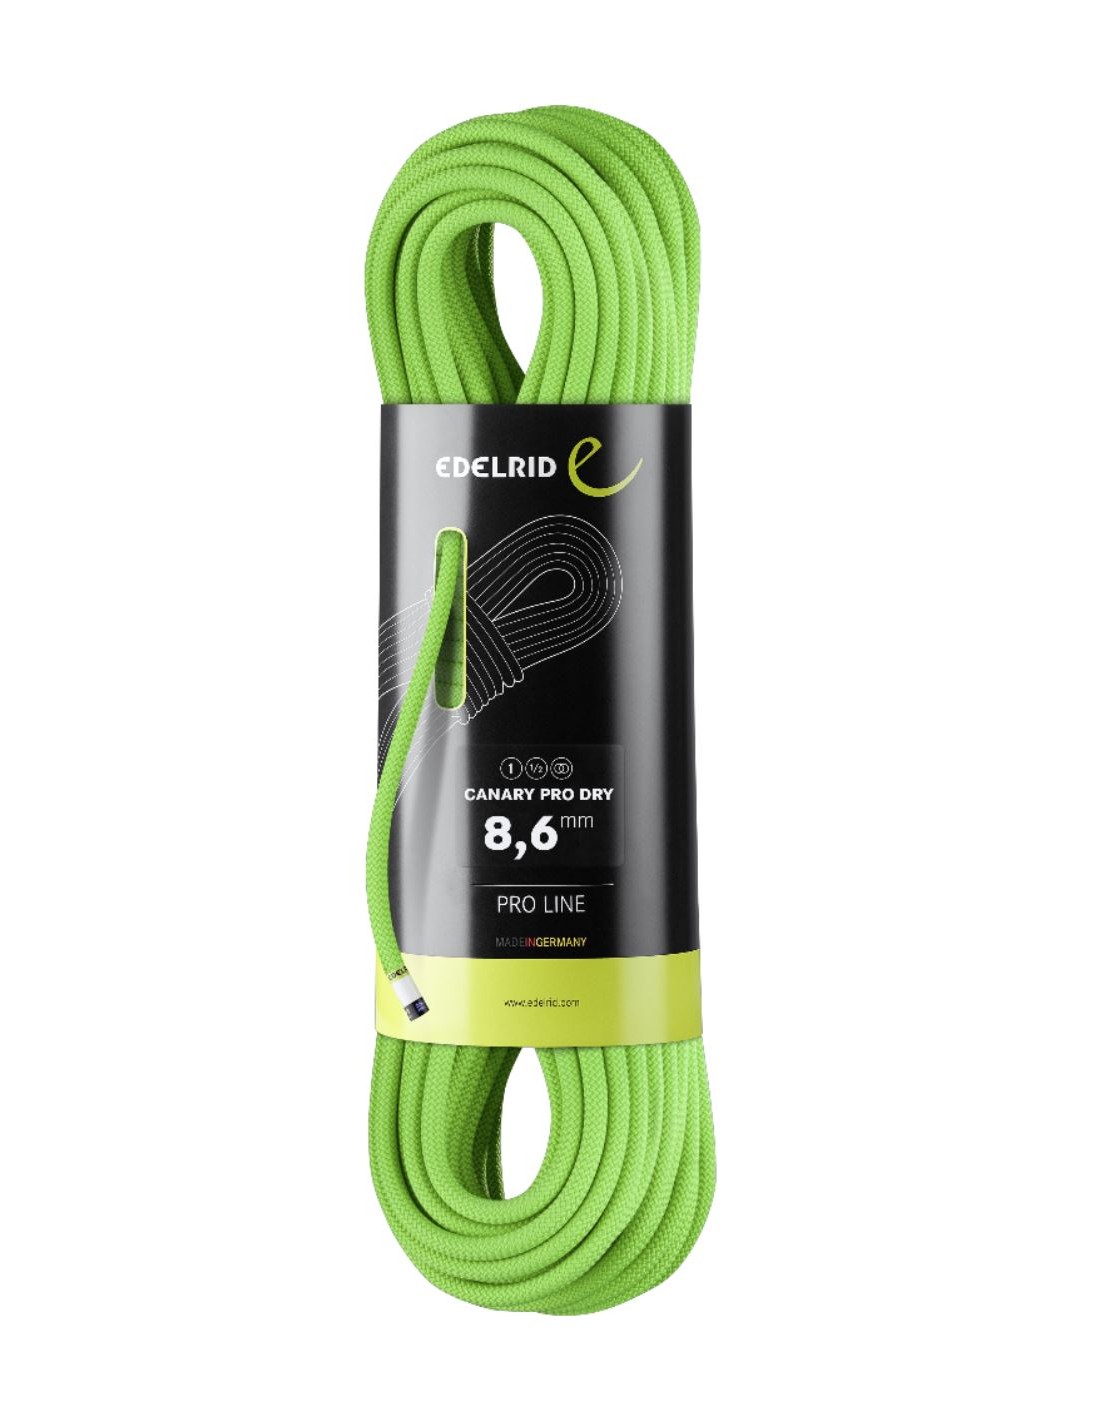 Edelrid Kletterseil Canary Pro Dry 8.6mm, neon green, 50 Meter Seildurchmesser - 8.6 - 9.0 mm, Seilvariante - Einfachseil, Seilgewicht - 51 - 55 g / m, Seillänge - 50 m, Seilfarbe - Neon Green, von Edelrid